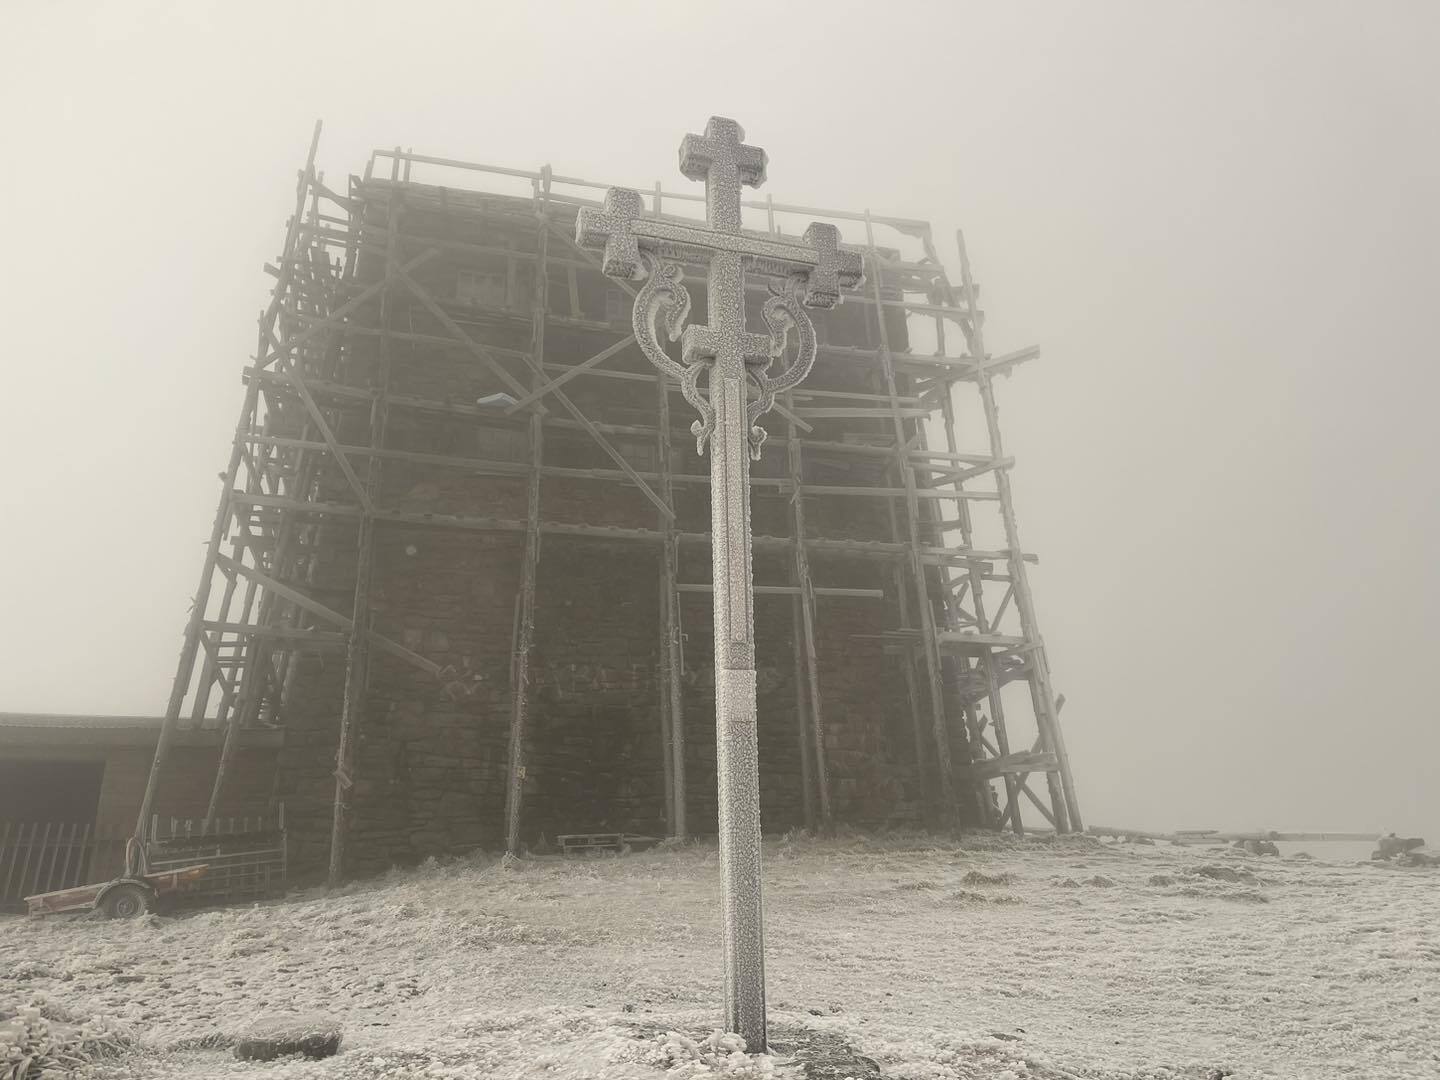 Мінус 5 градусів та сніг: на високогір'я Карпат прийшла зима (фото)